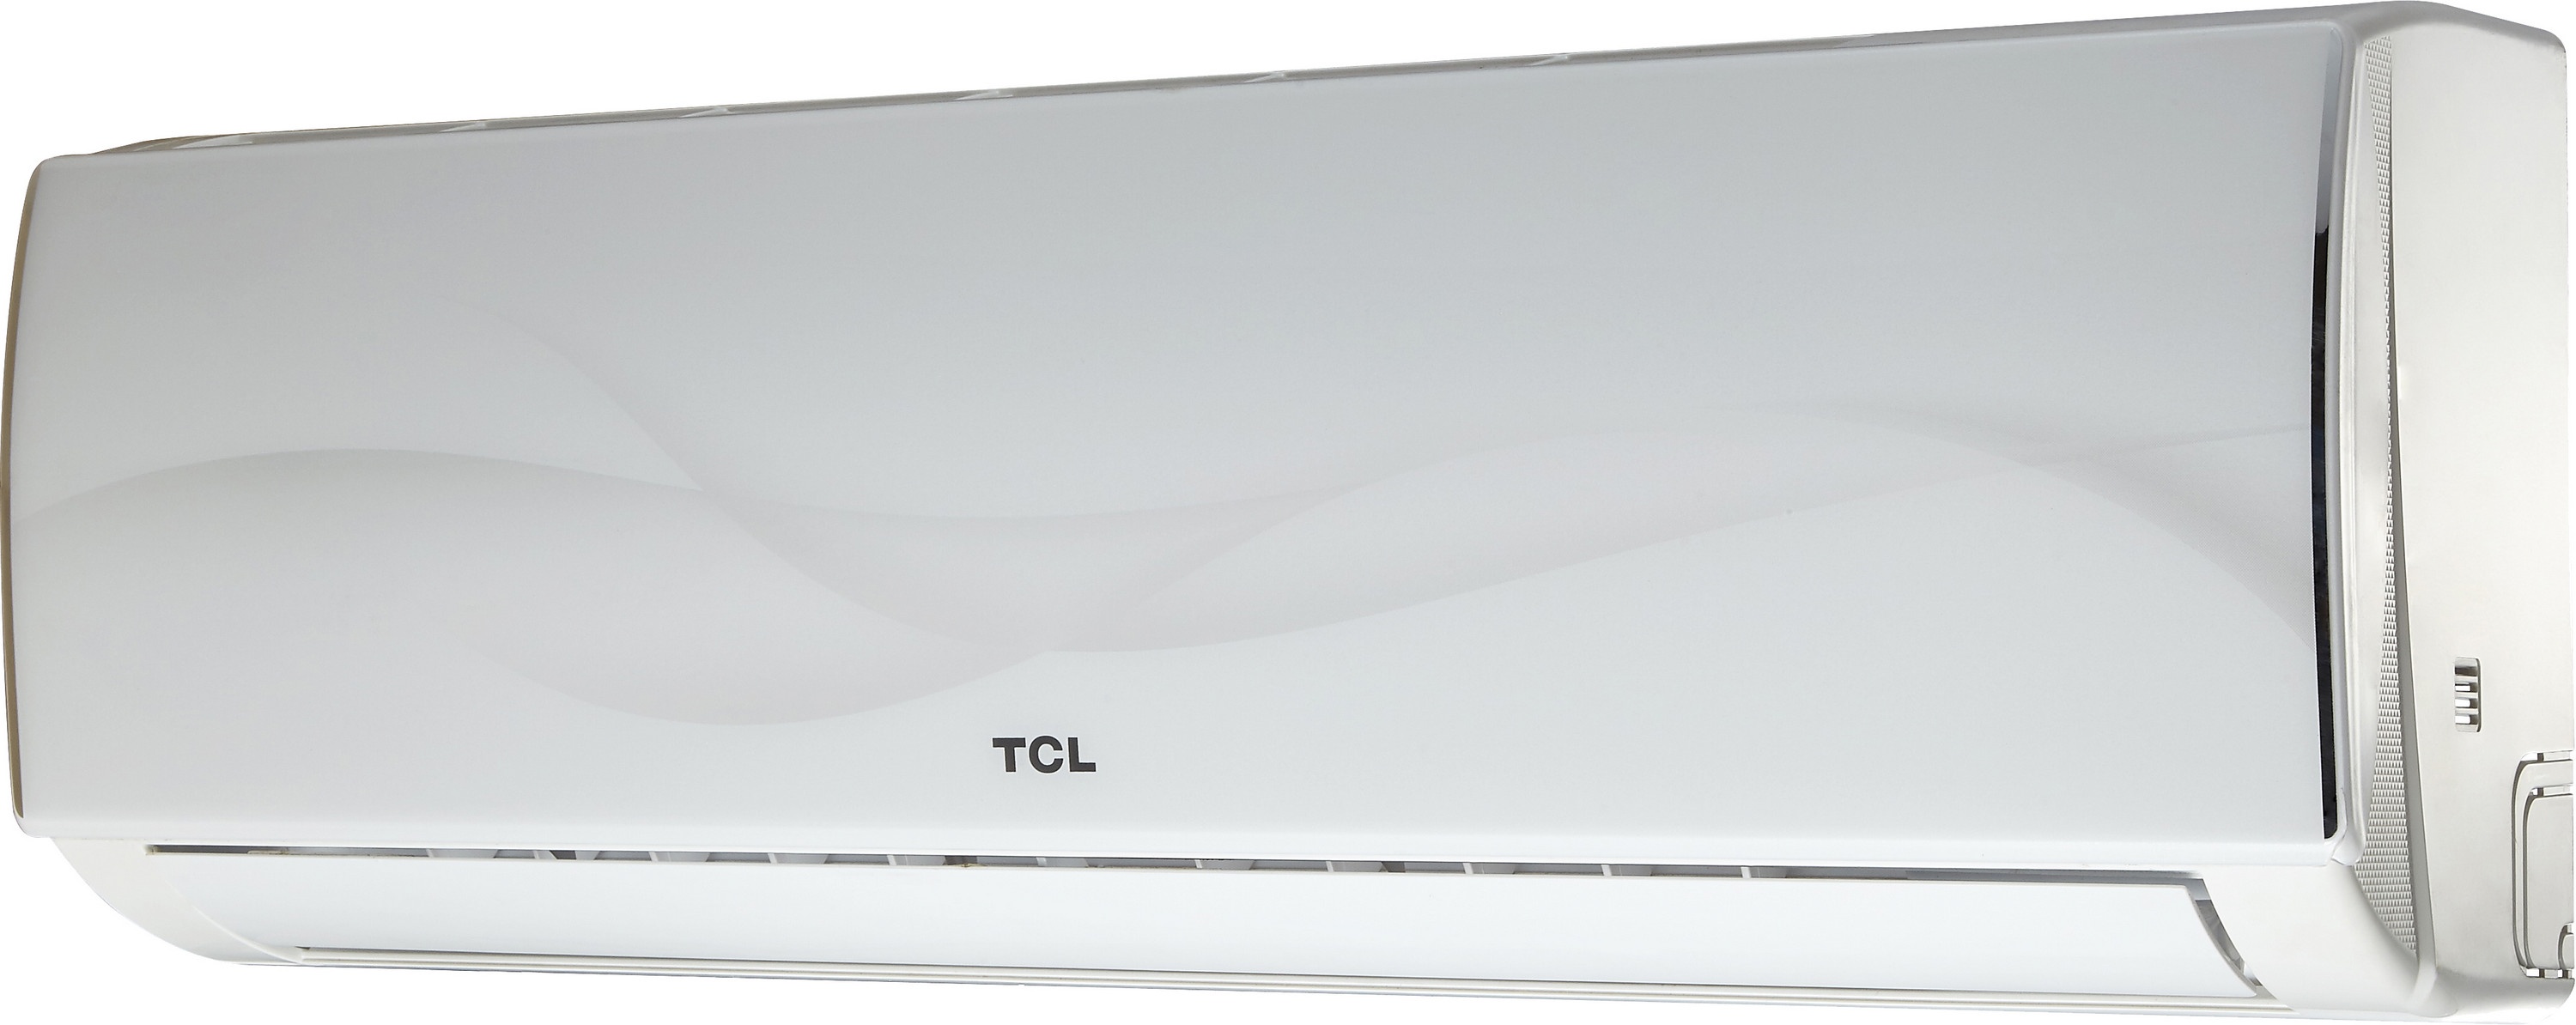 Внутренний блок мультисплит-системы TCL Elite XA31 9000 BTU Inverter цена 0.00 грн - фотография 2